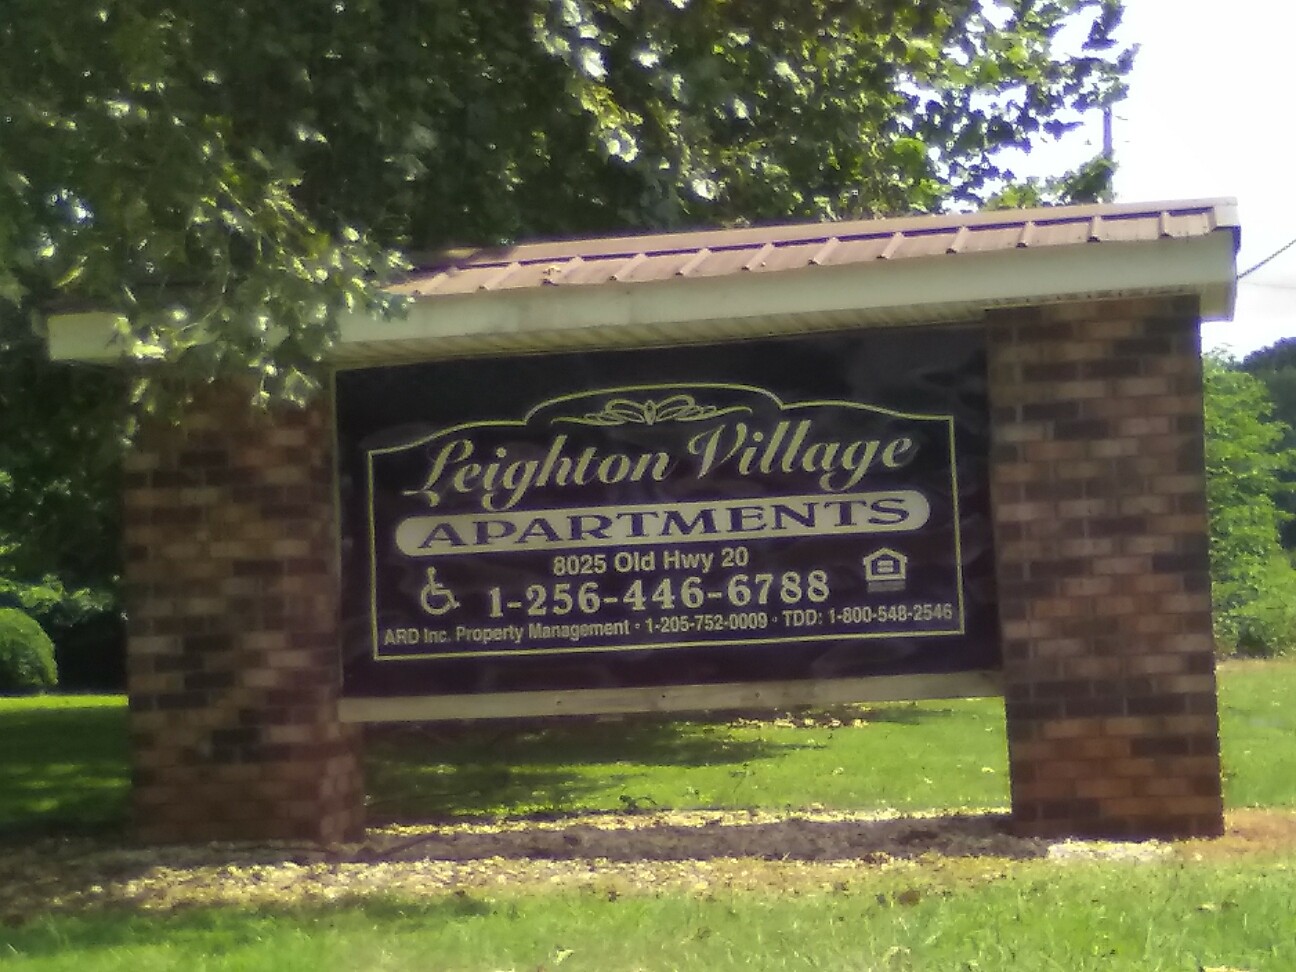 Leighton Village